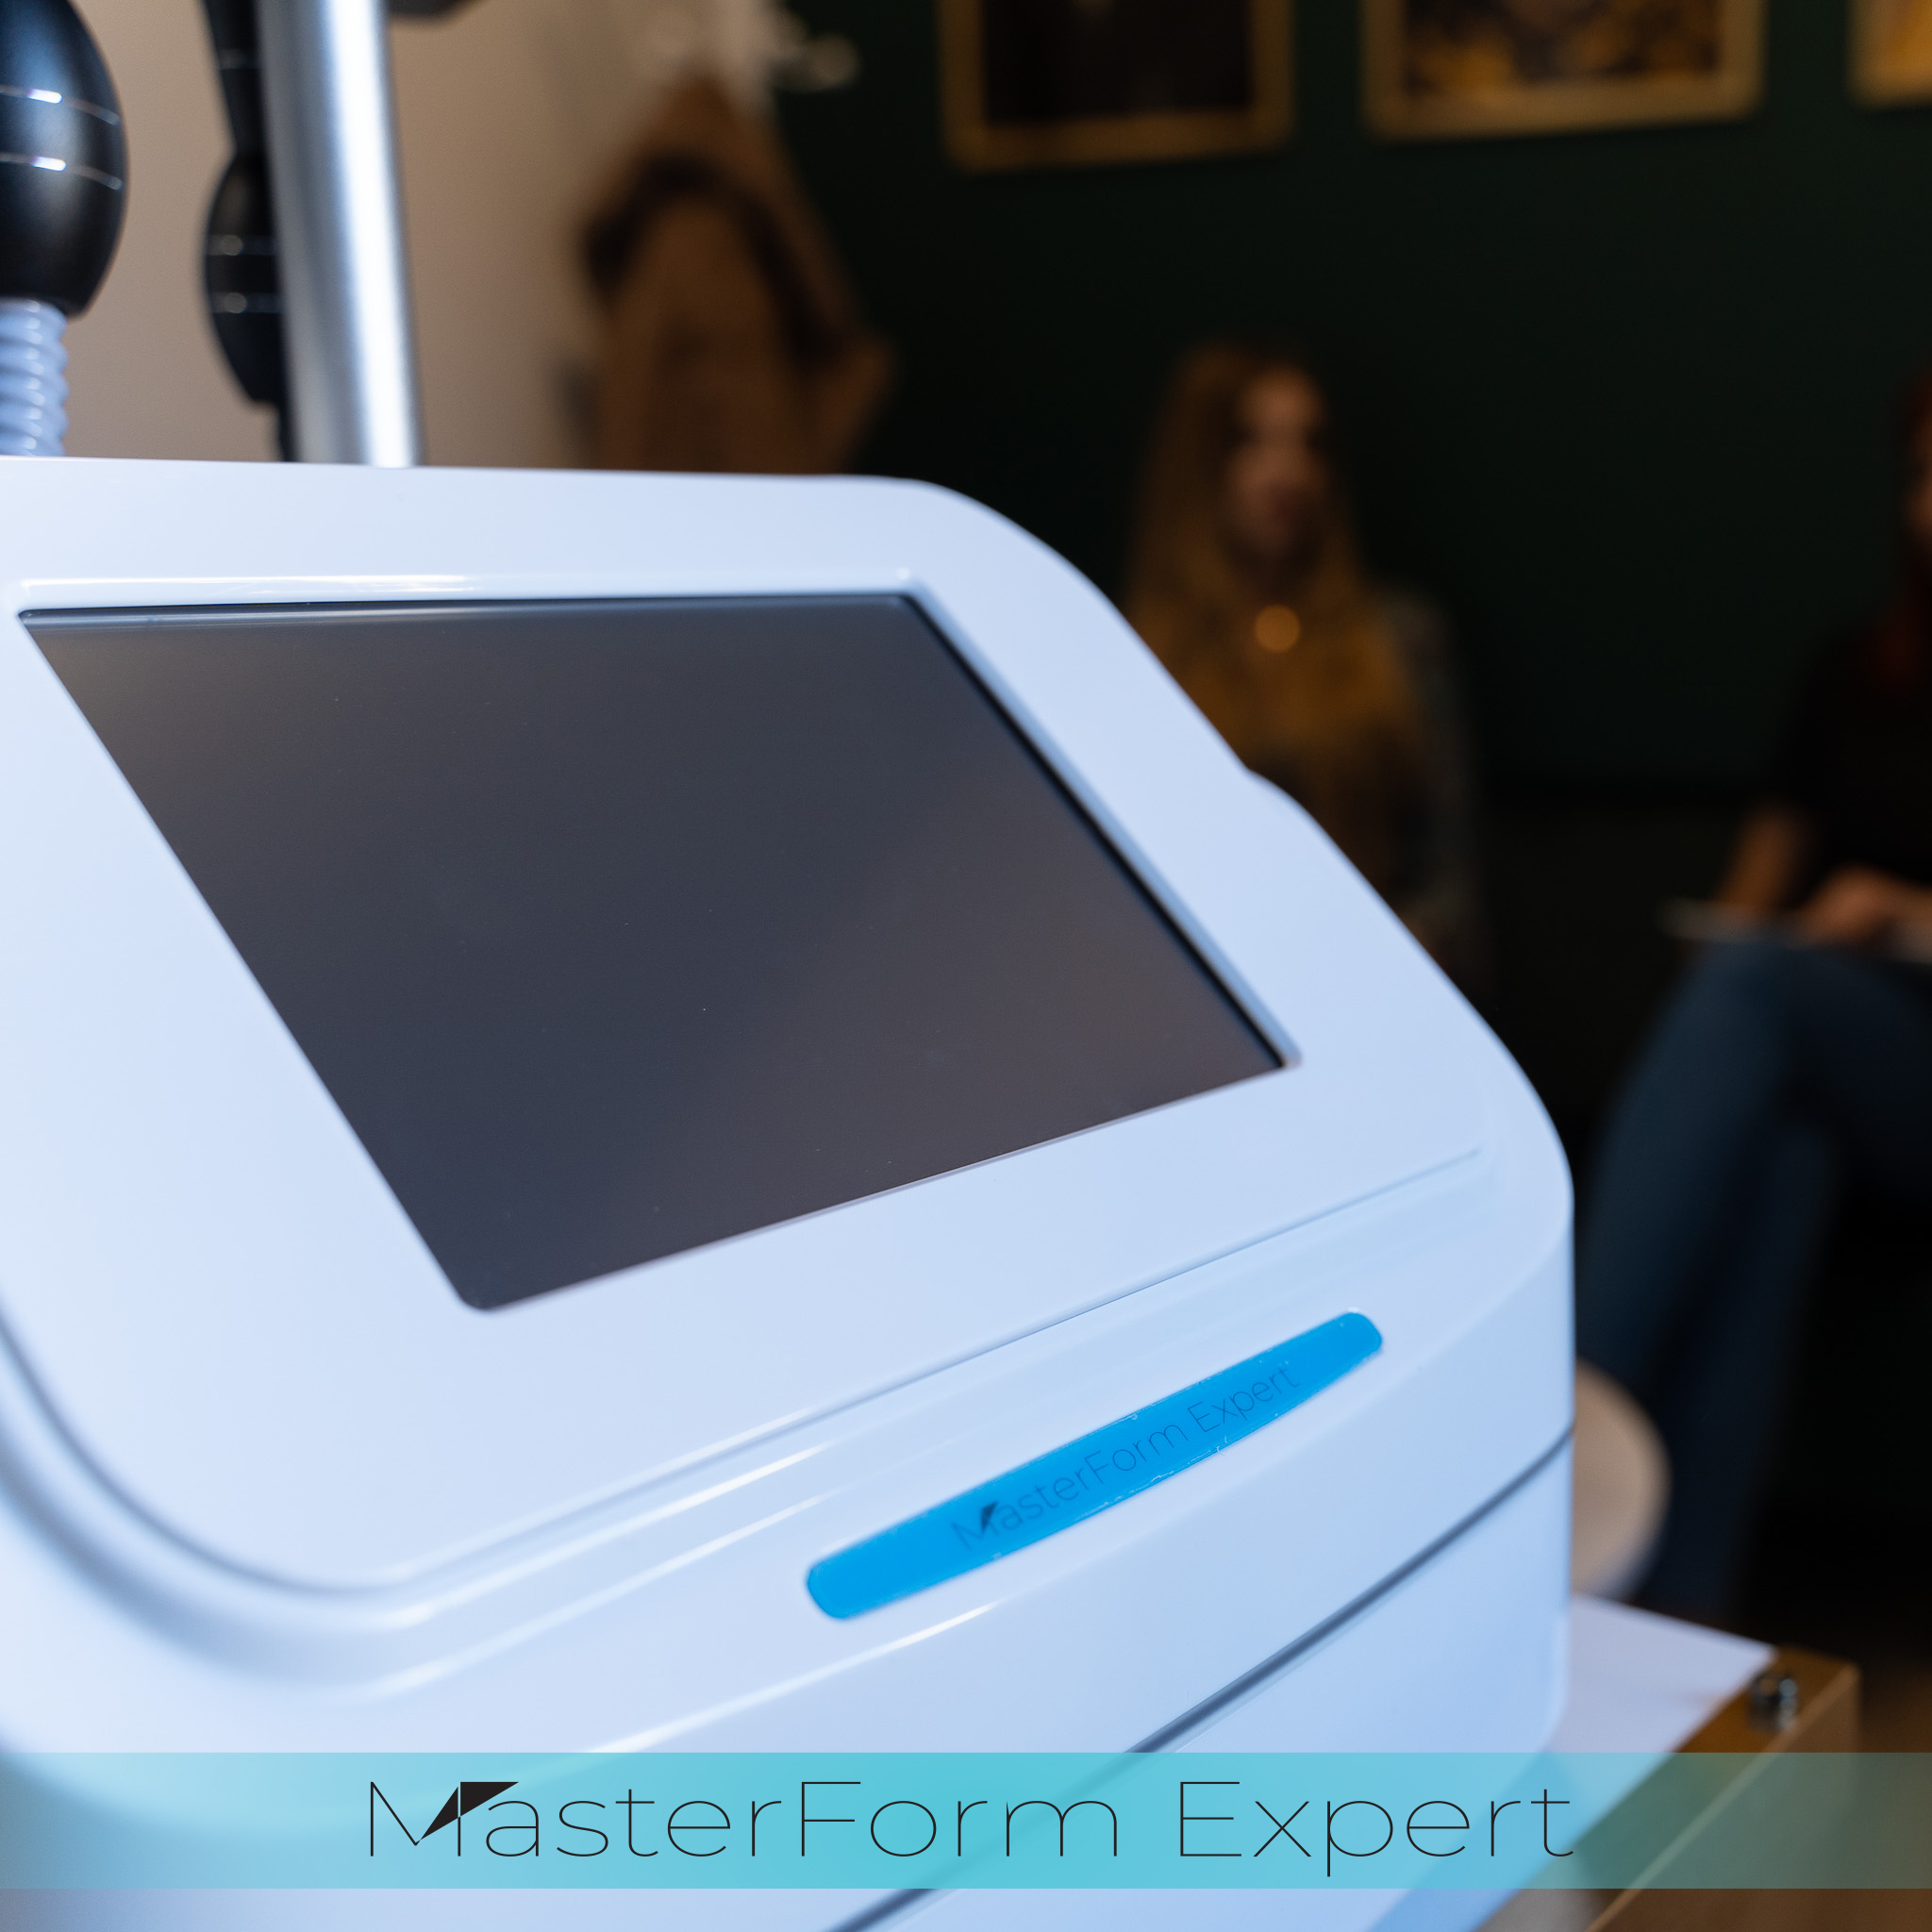 MasterForm Expert został specjalnie zaprojektowany na podstawie wieloletnich badań dotyczących modelowania sylwetki oraz skutecznej redukcji cellulitu.